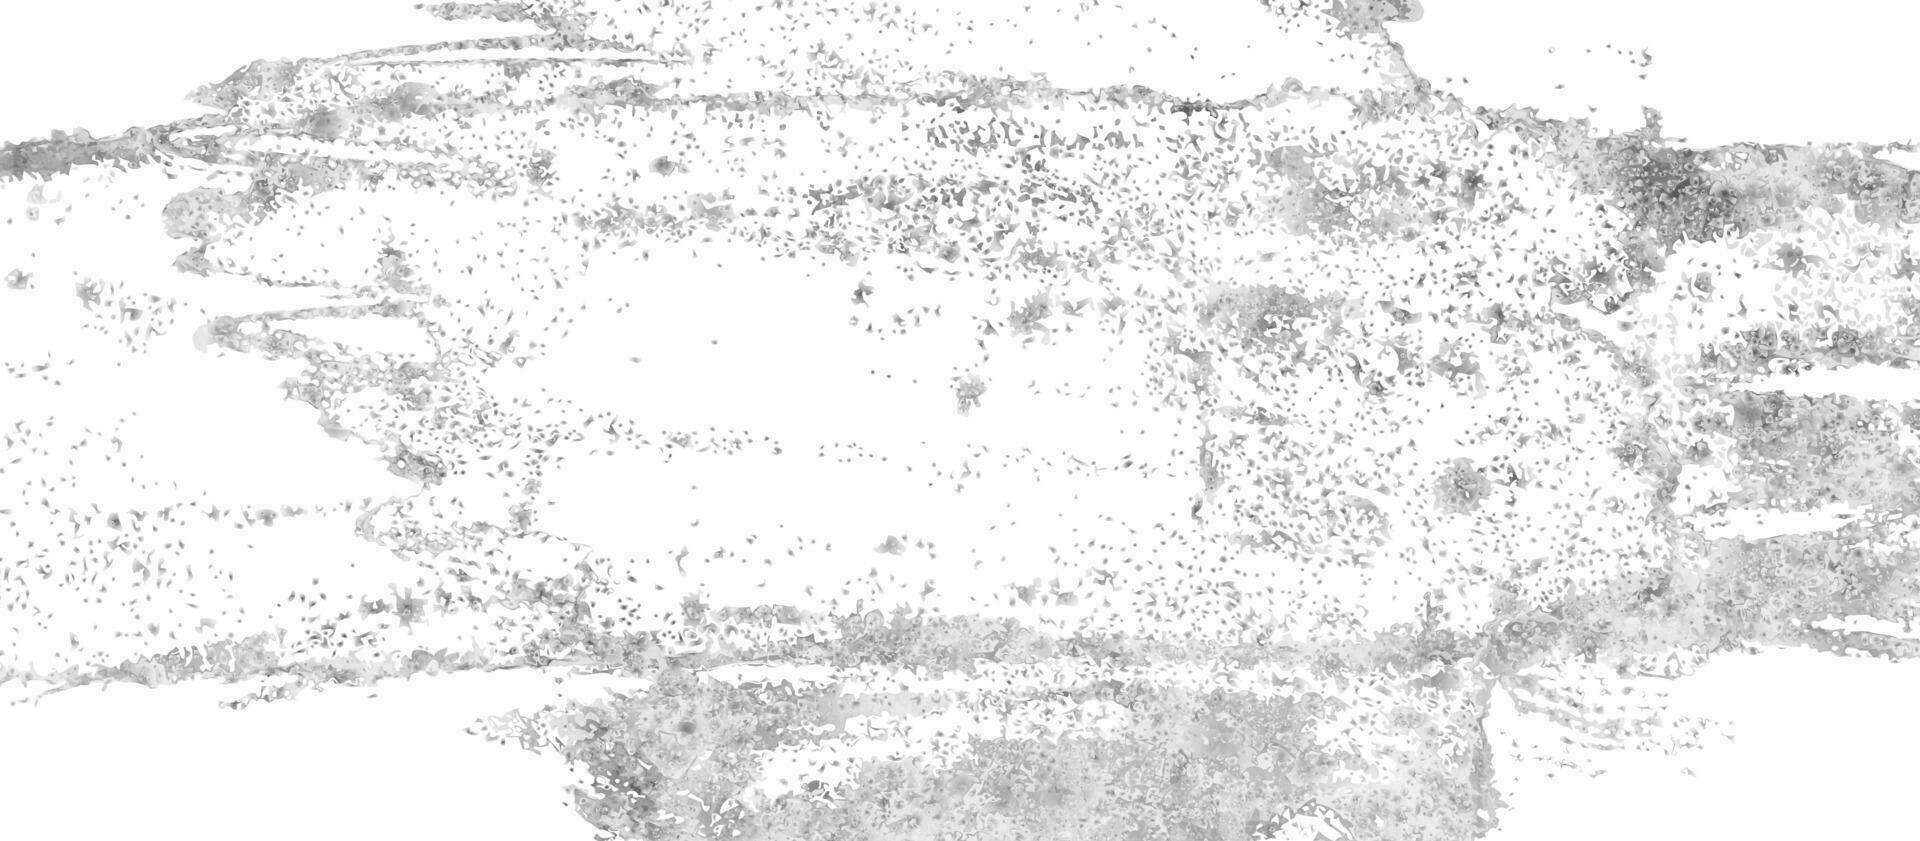 bianca grigio inchiostro acquerello grunge astratto sfondo vettore